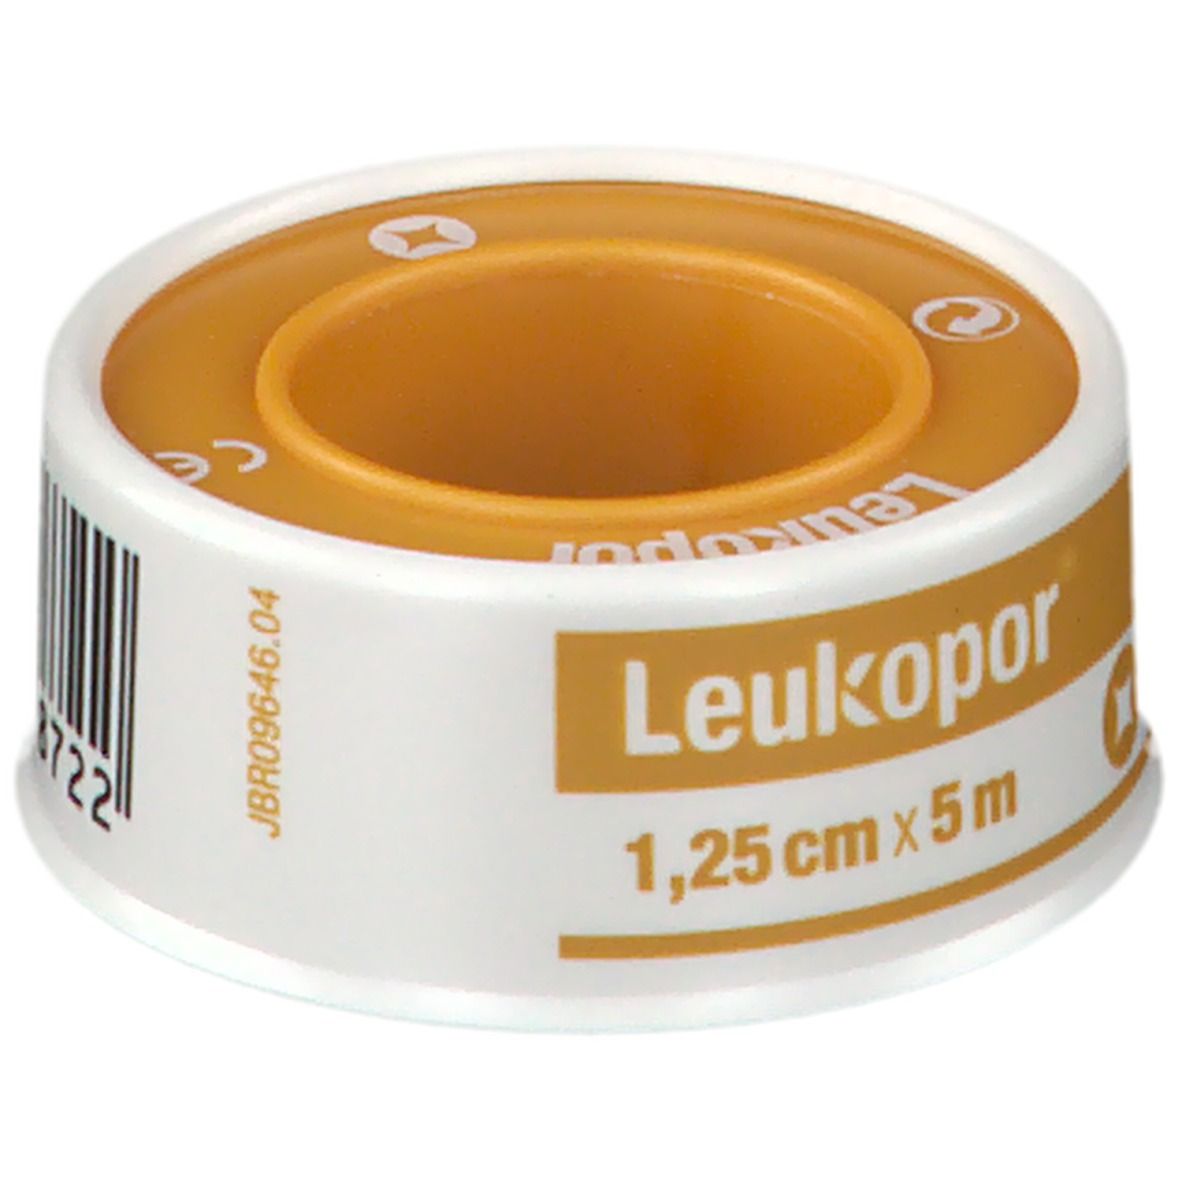 Leukopor® 1,25 cm x 5 m